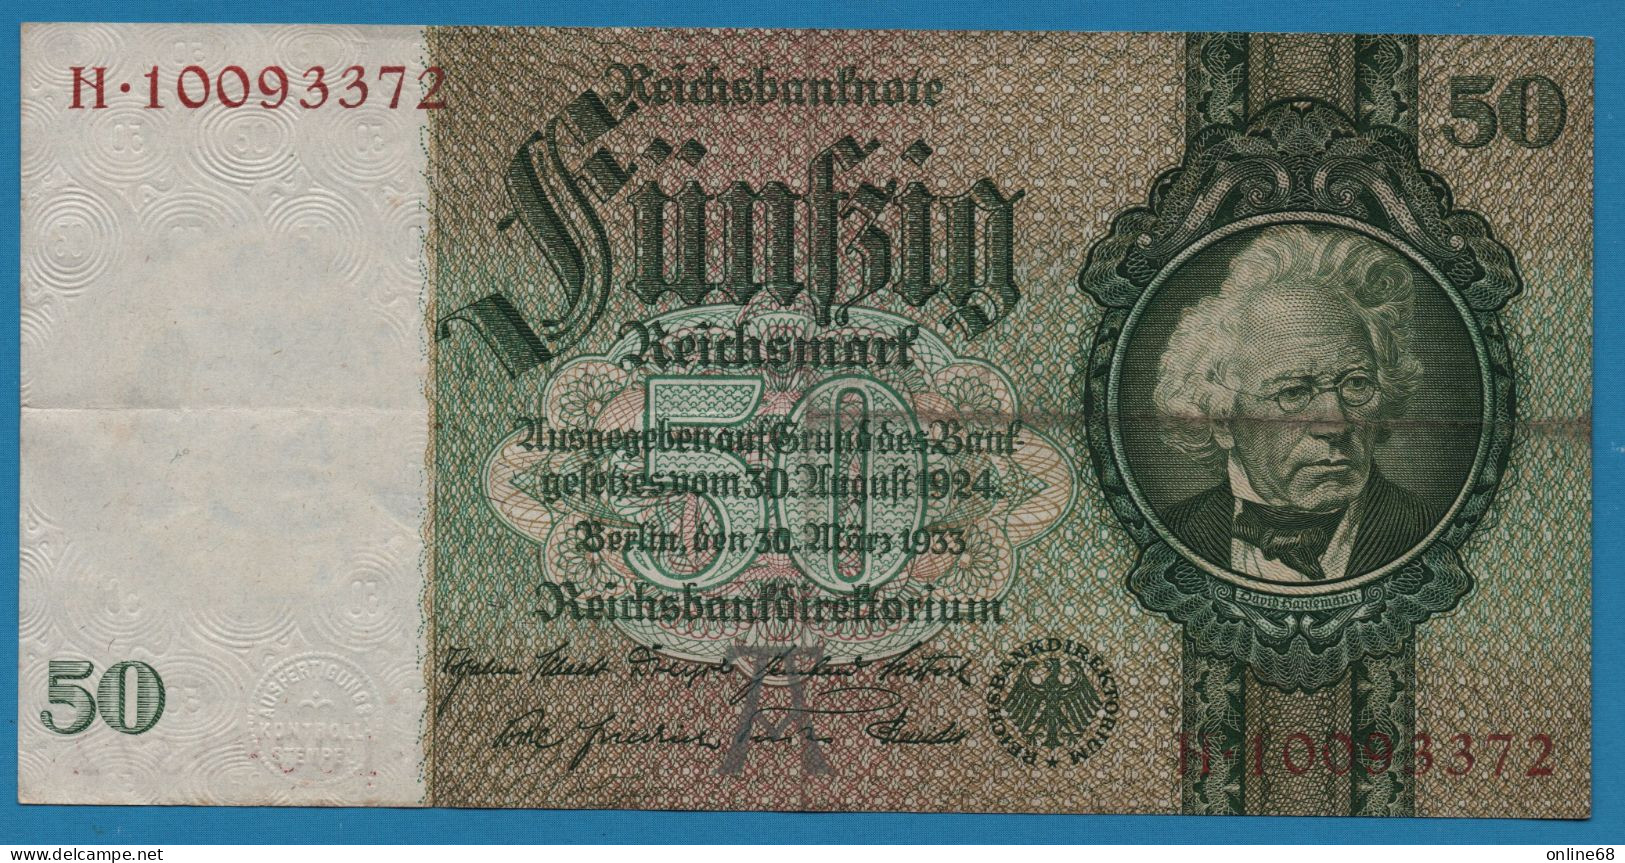 DEUTSCHES REICH 50 REICHSMARK 30.03.1933 LETTER A # H.10093372 P# 182a  David Hansemann - 50 Reichsmark